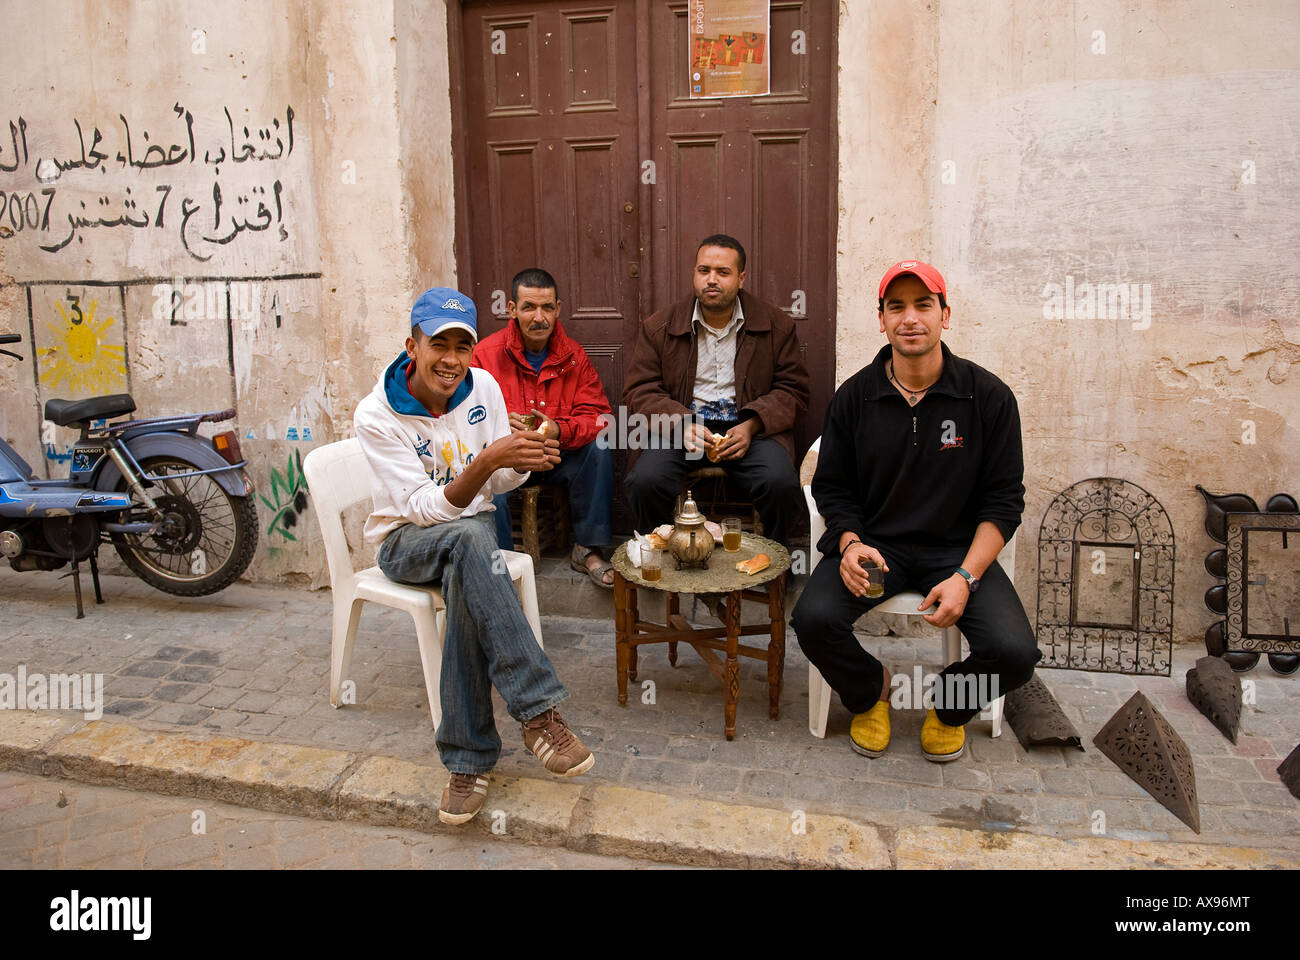 Les personnes qui boivent du thé à la menthe traditionnel dans l'ancienne cité portugaise, El Jadida (Mazagan), Maroc Banque D'Images